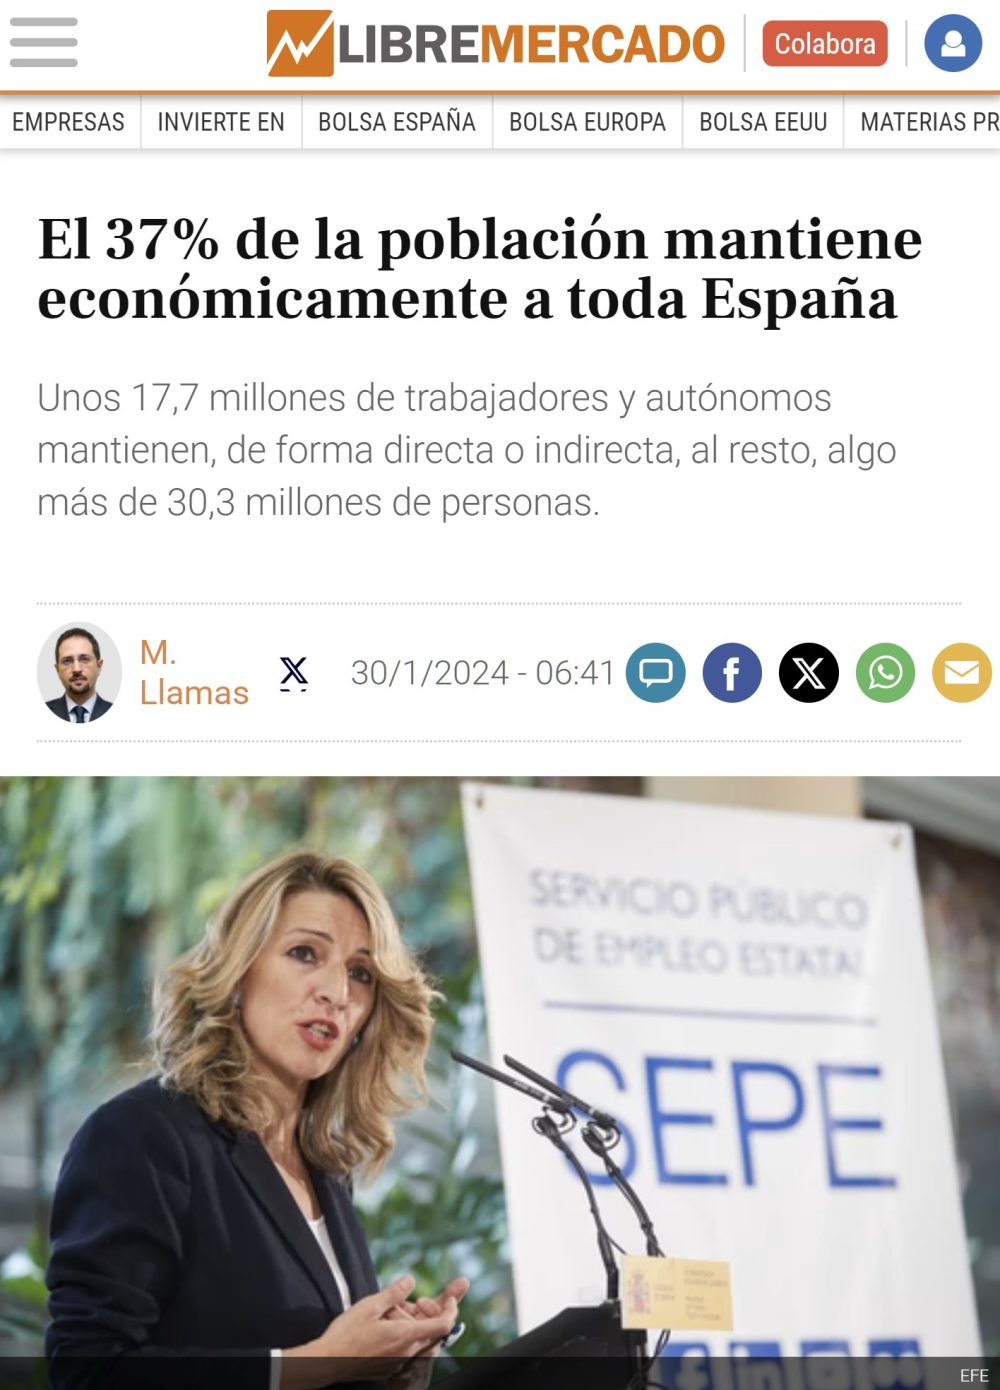 El 37% de la población española mantiene económicamente al 63% restante